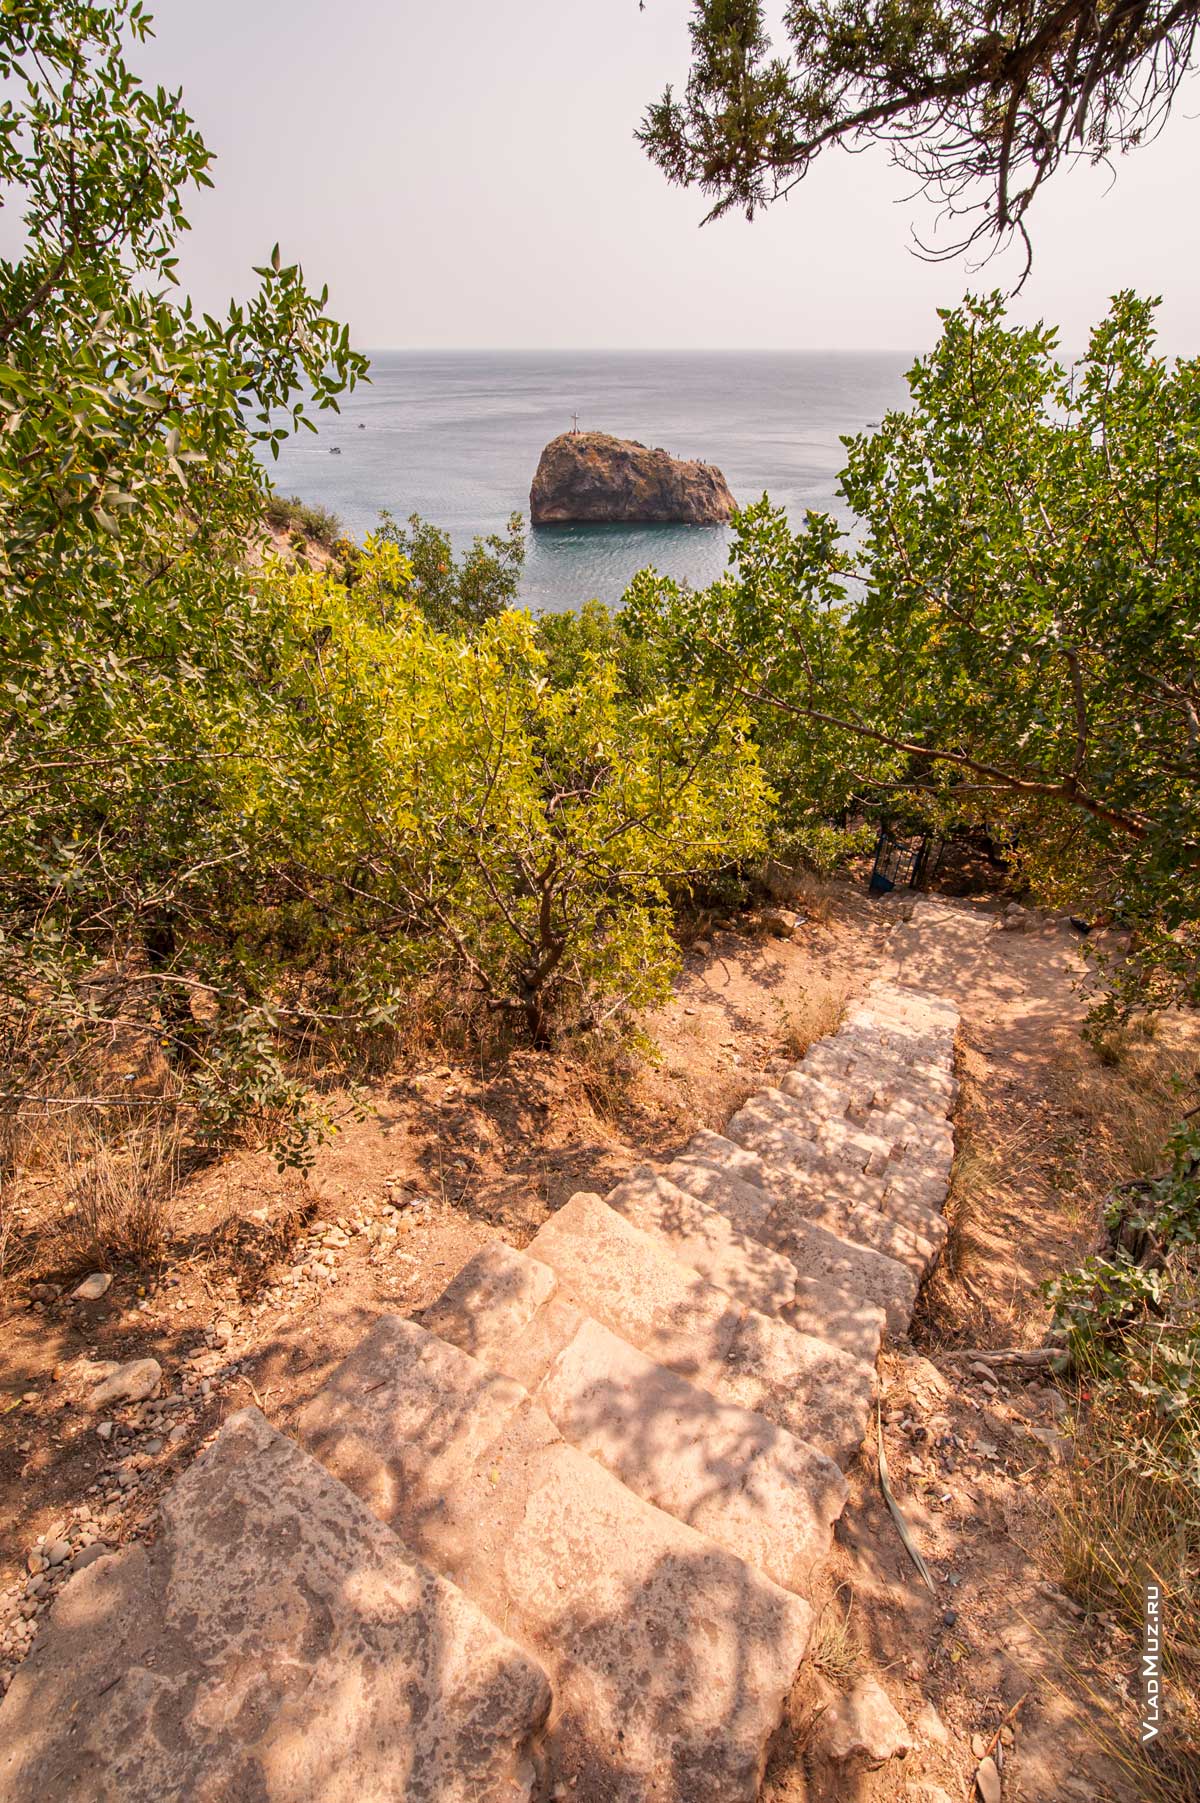 Крым, мыс Фиолент: фото с лестницы к морю скалы святого Явления с крестом на вершине